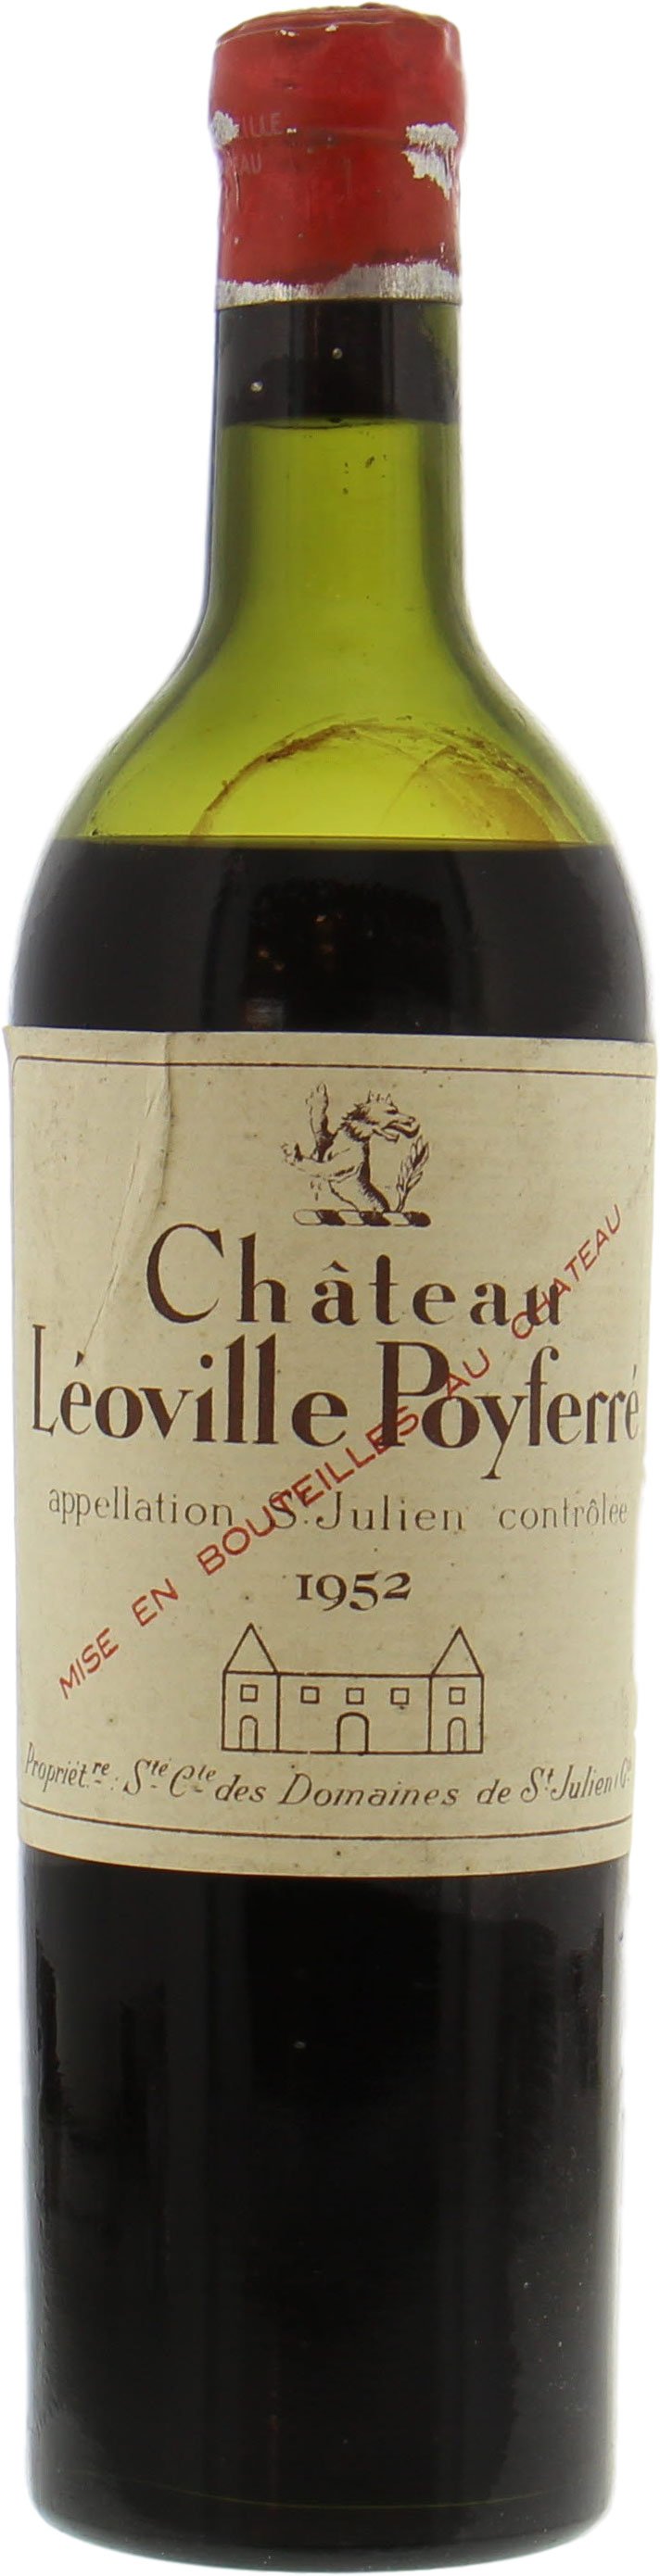 Chateau Leoville Poyferre - Chateau Leoville Poyferre 1952